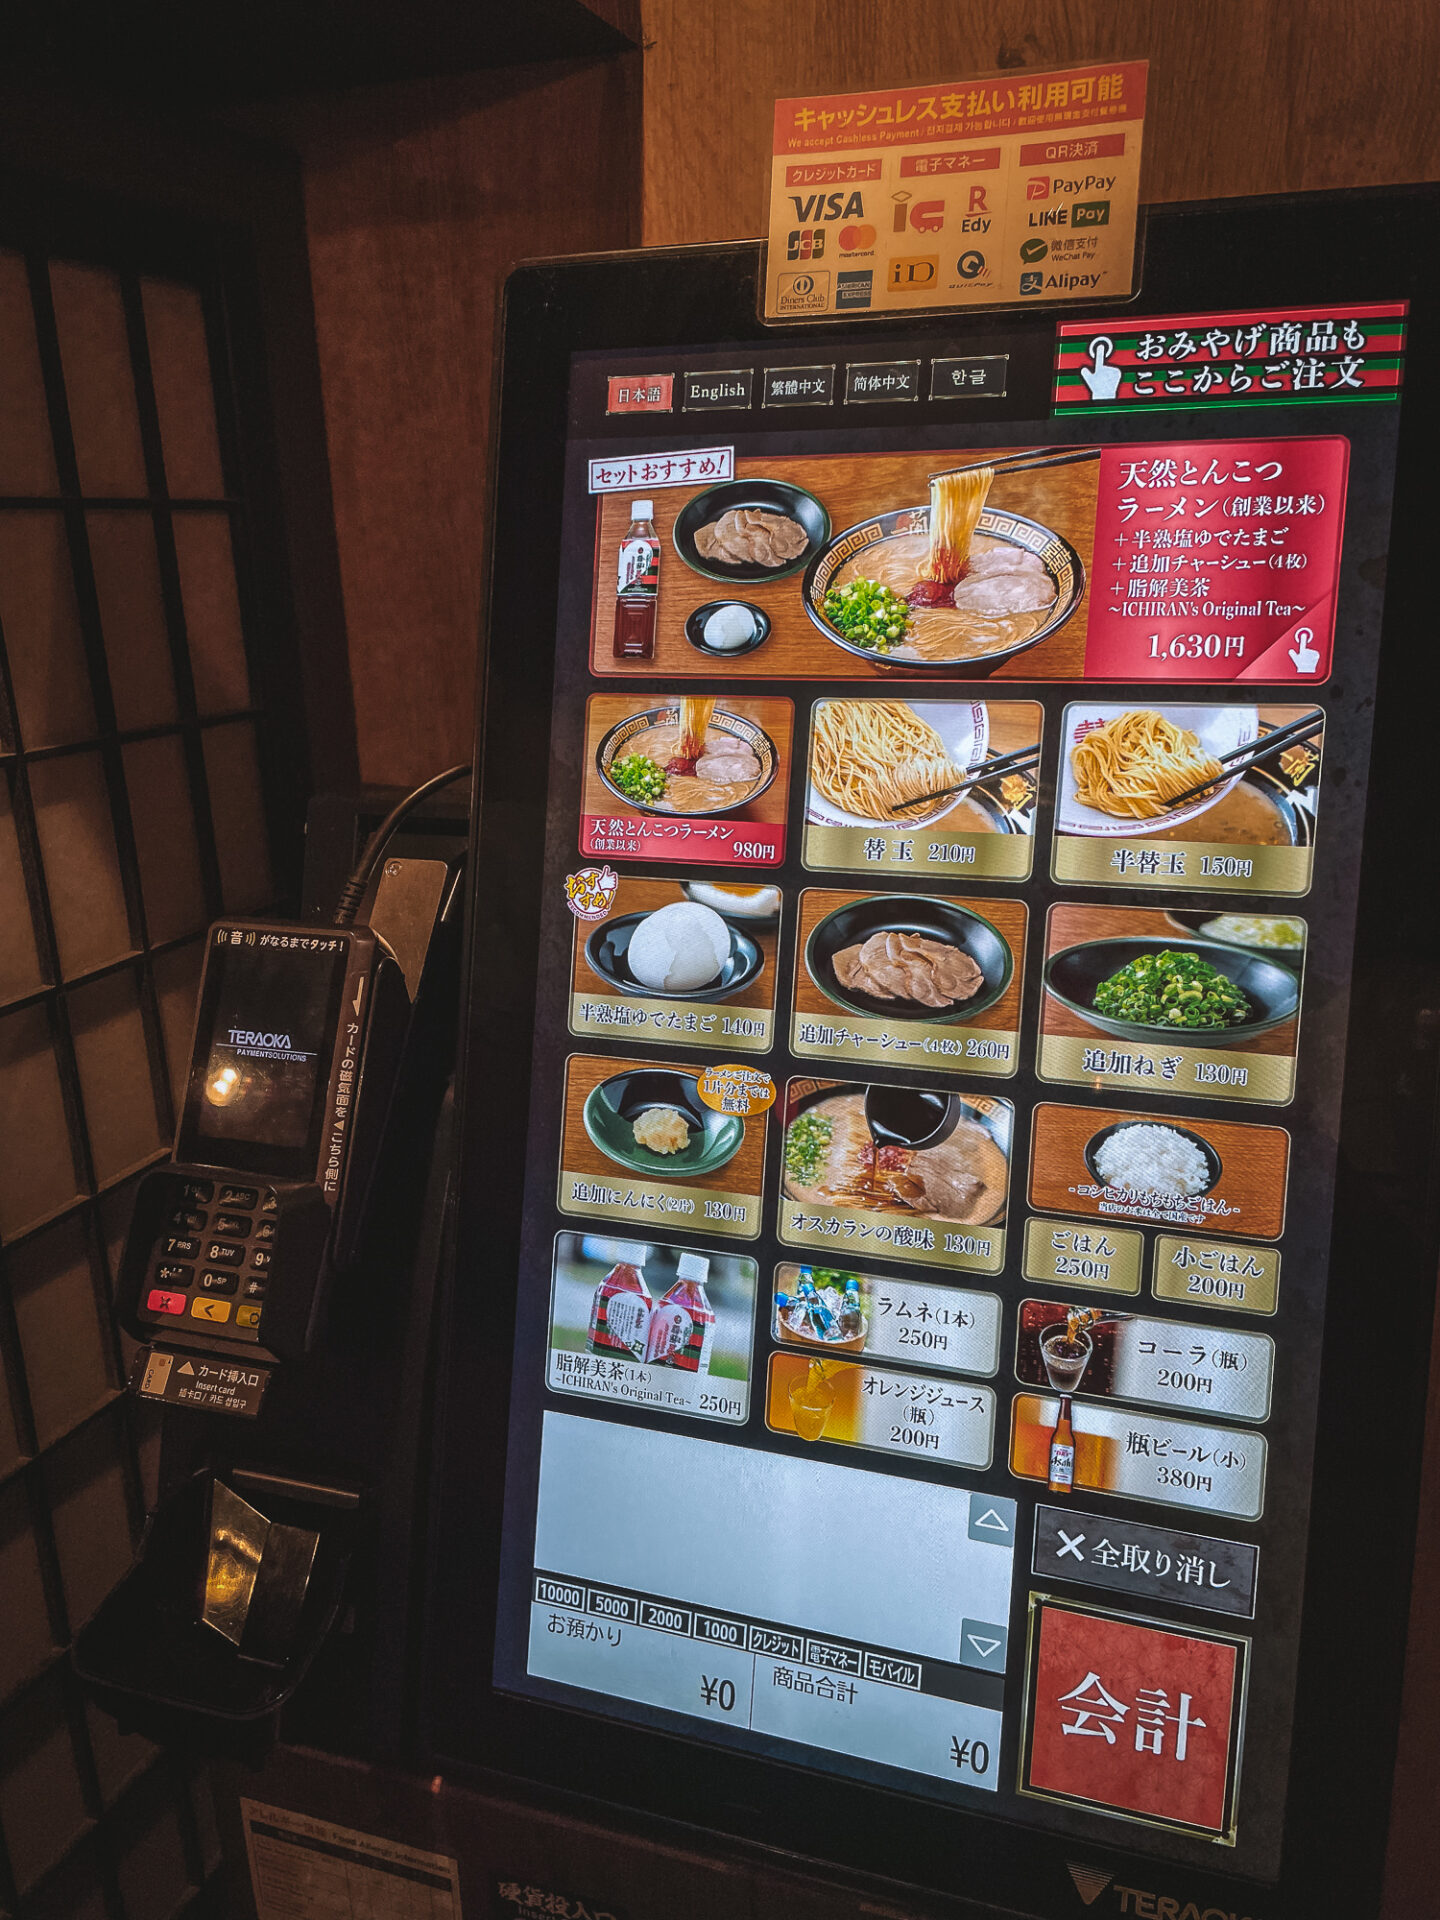 Ordering food at Ichiran Ramen, 3 day tokyo itinerary